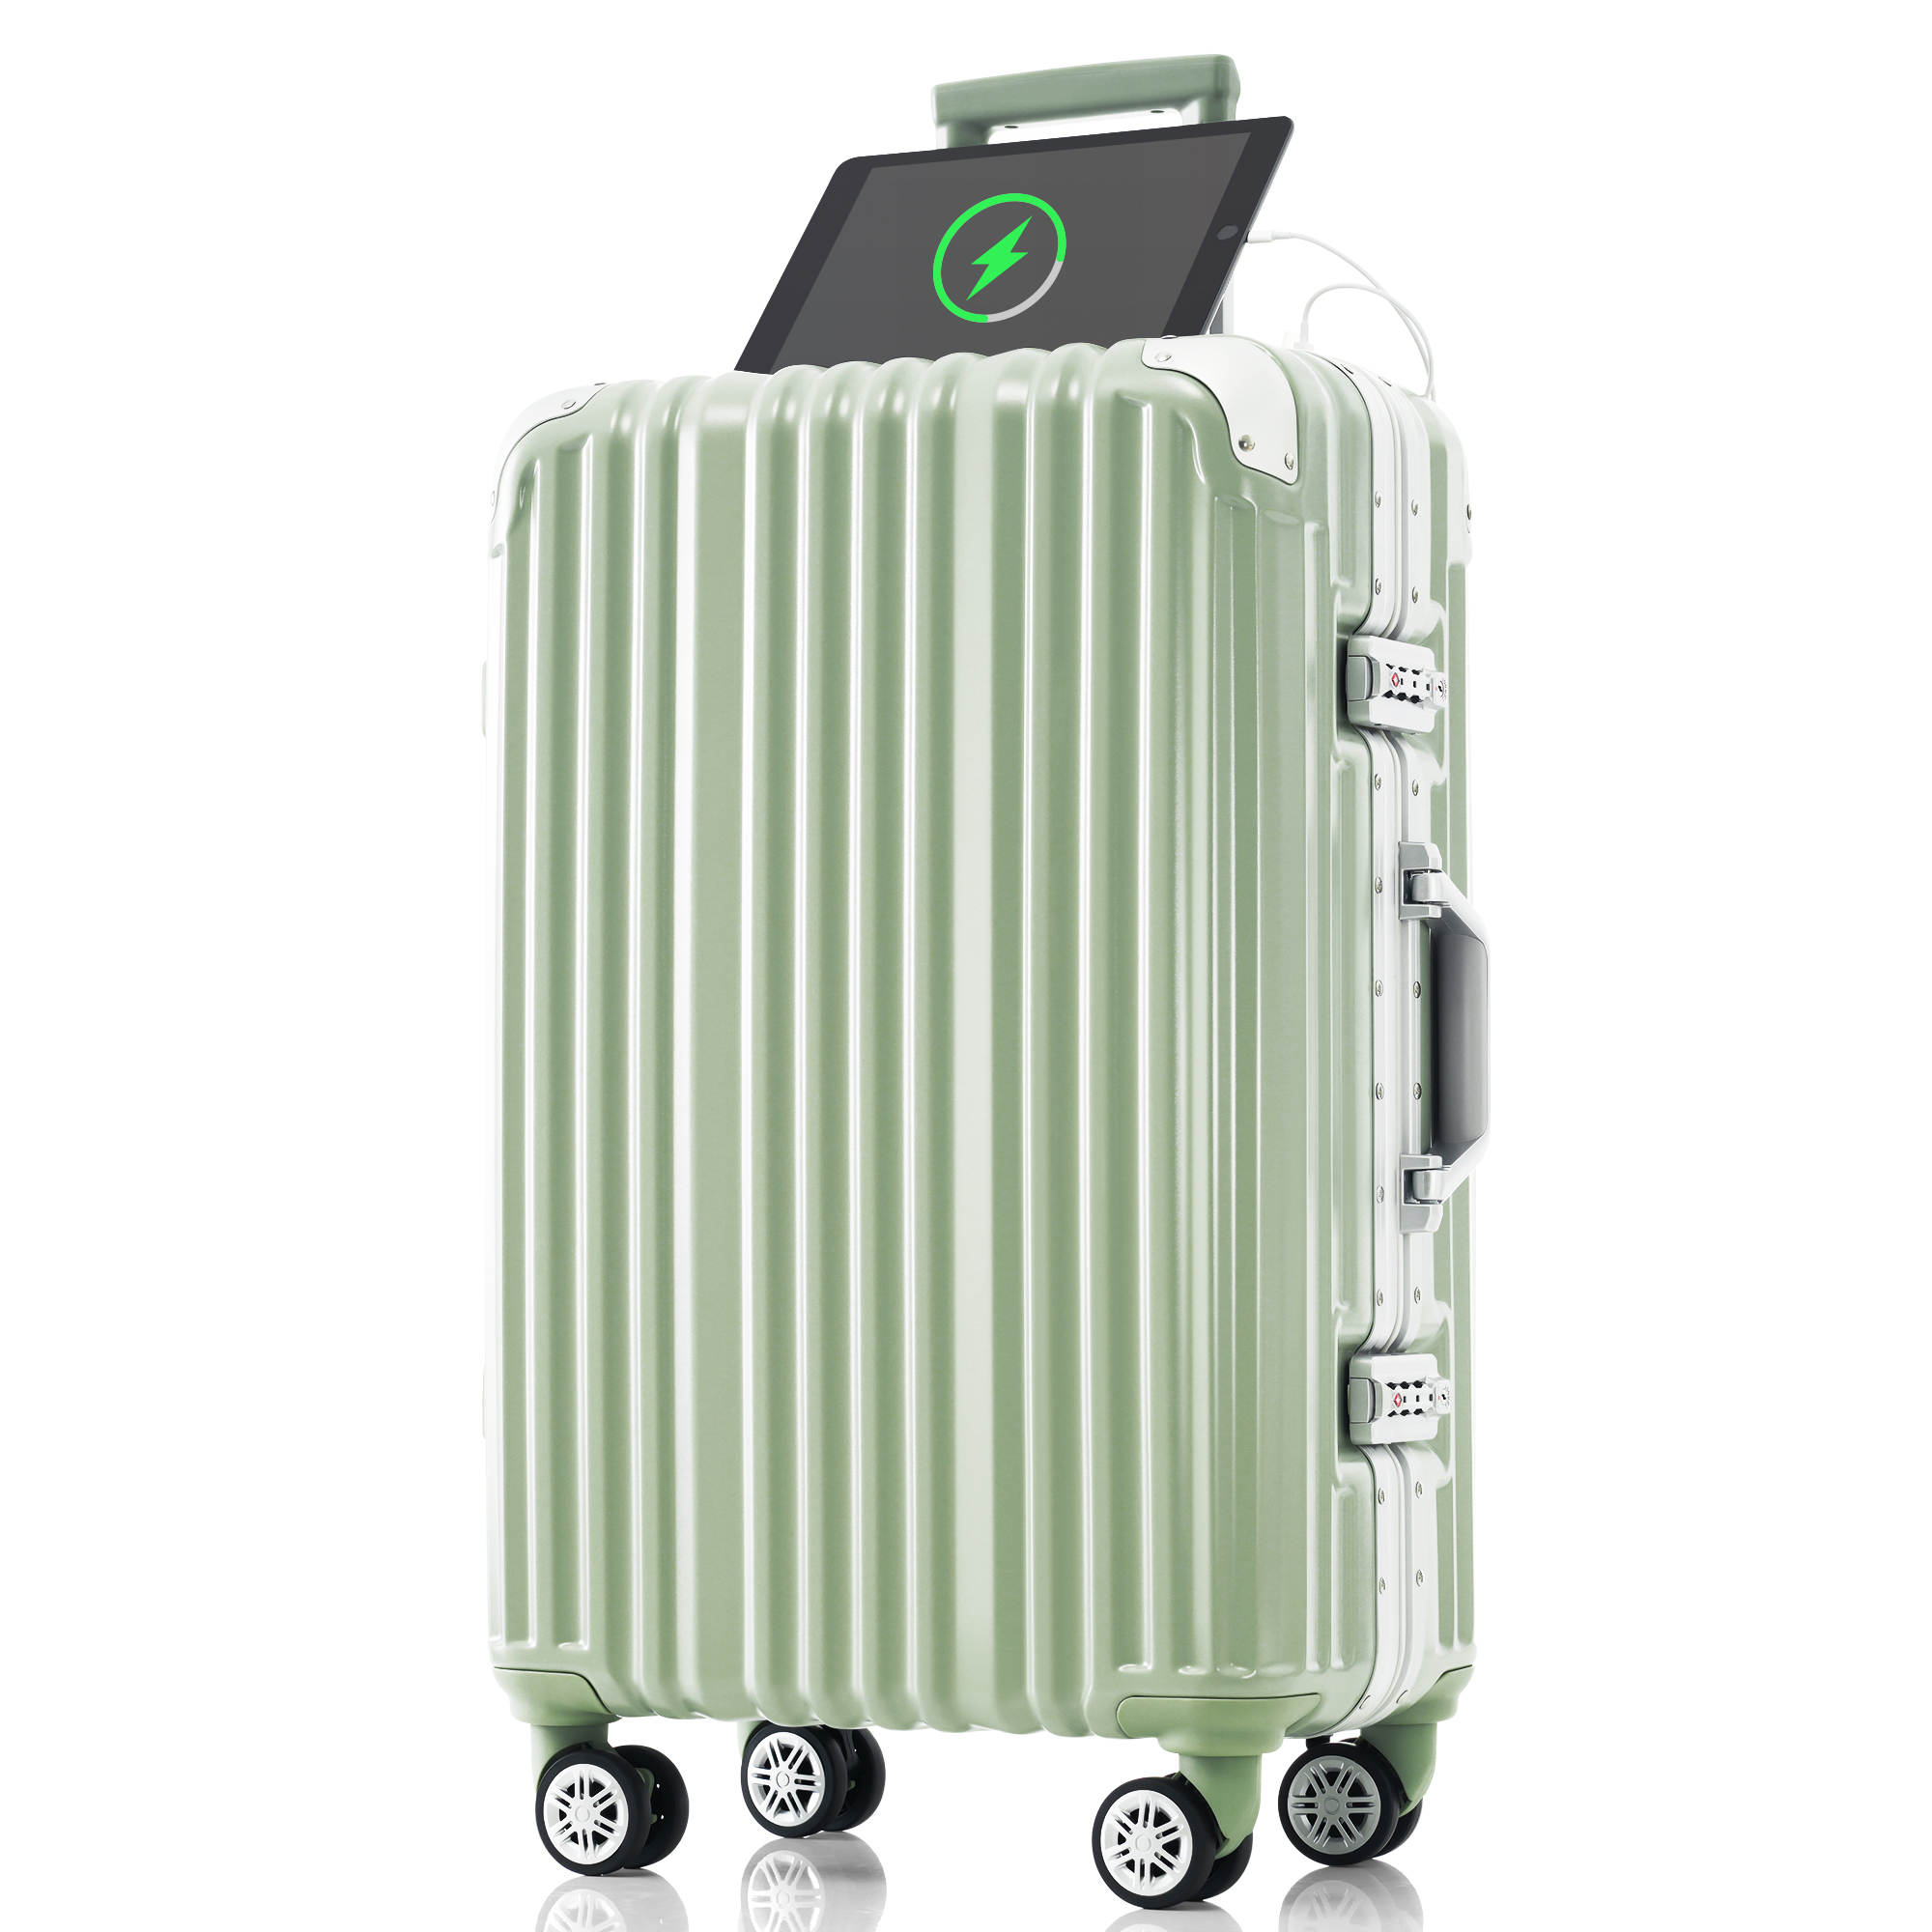 スーツケース Lサイズ 軽量 アルミフレーム キャリーバッグ ストッパー付き キャリーケース USBポート付き 7泊〜10泊用 大型 TSAロック  TANOBI T1169 suitcase